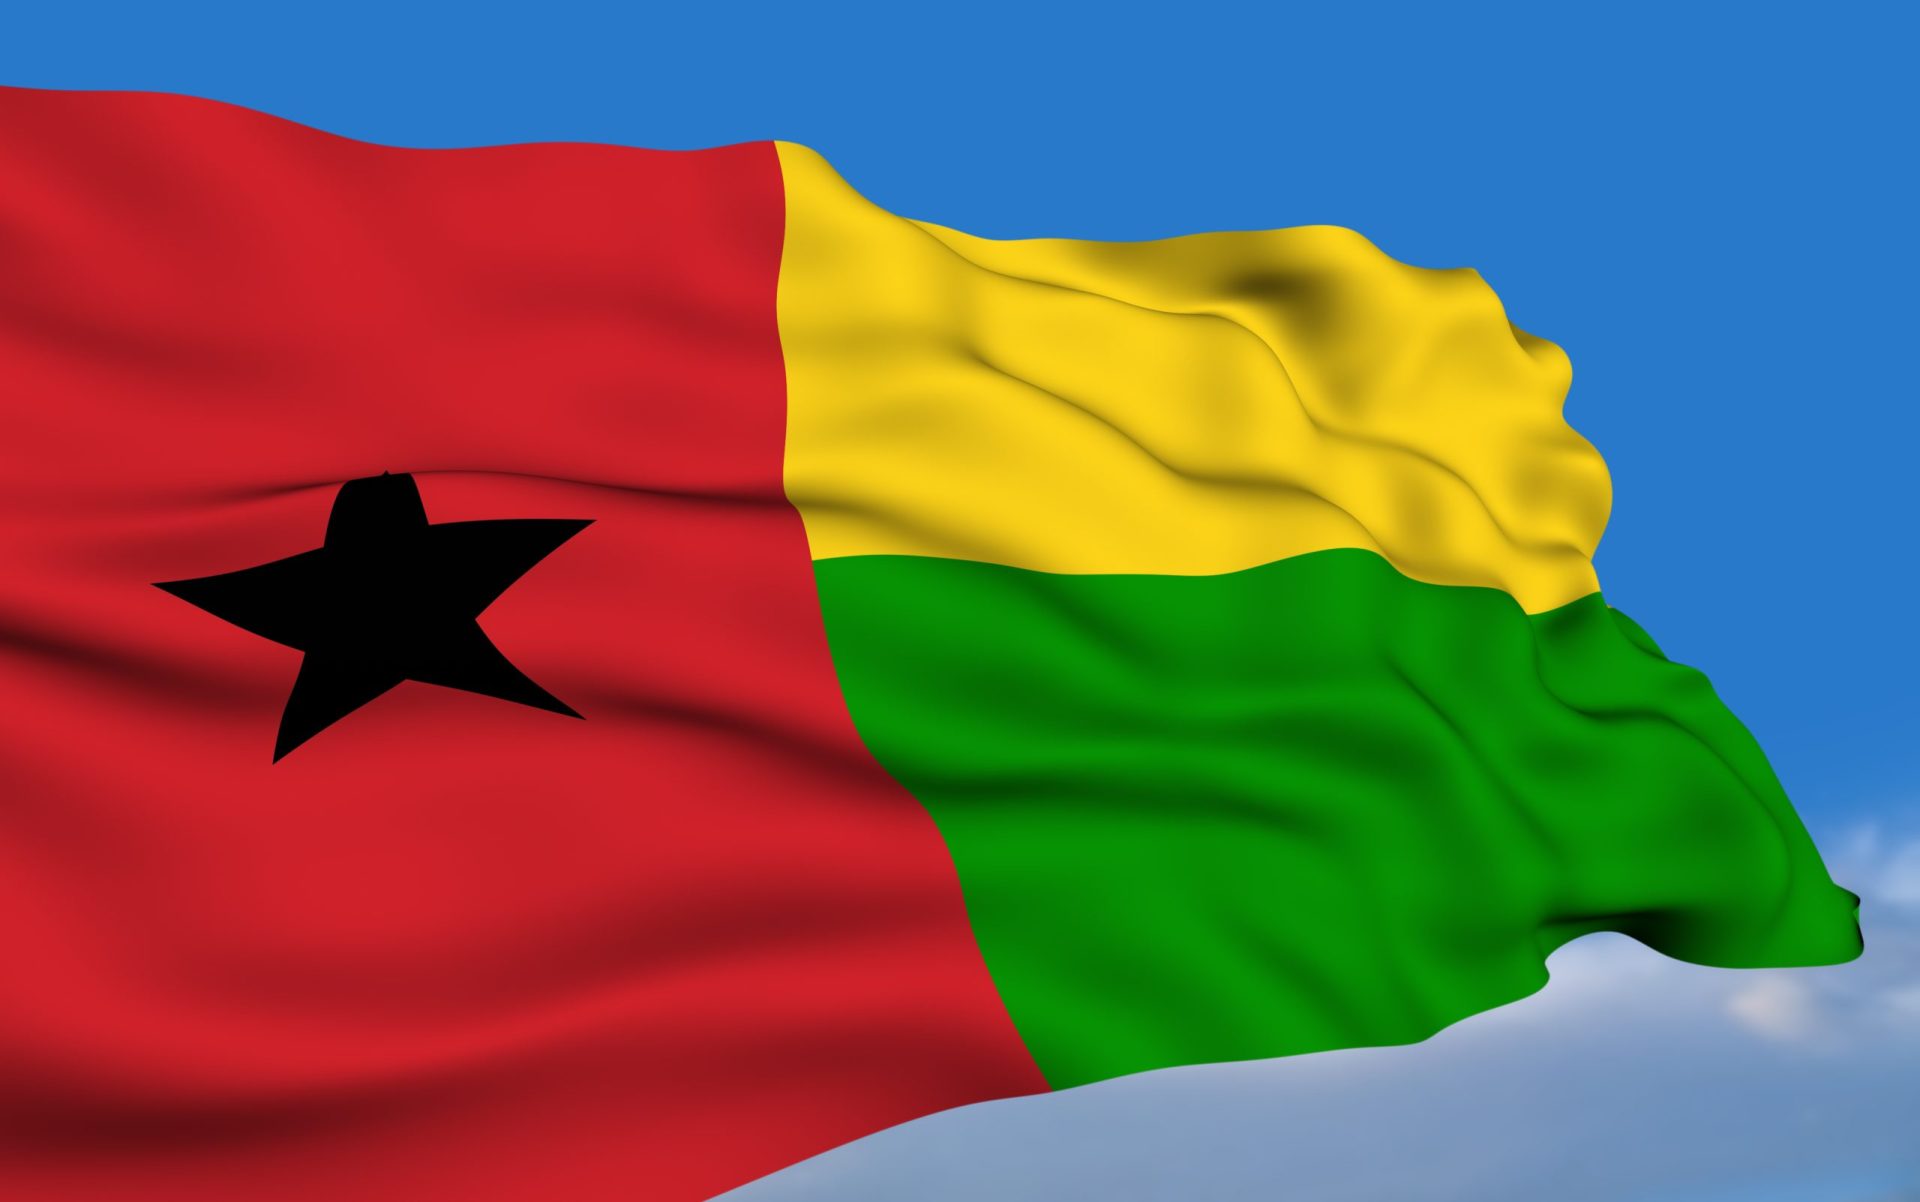 Baciro Djá diz que vai pedir demissão do cargo de PM da Guiné-Bissau